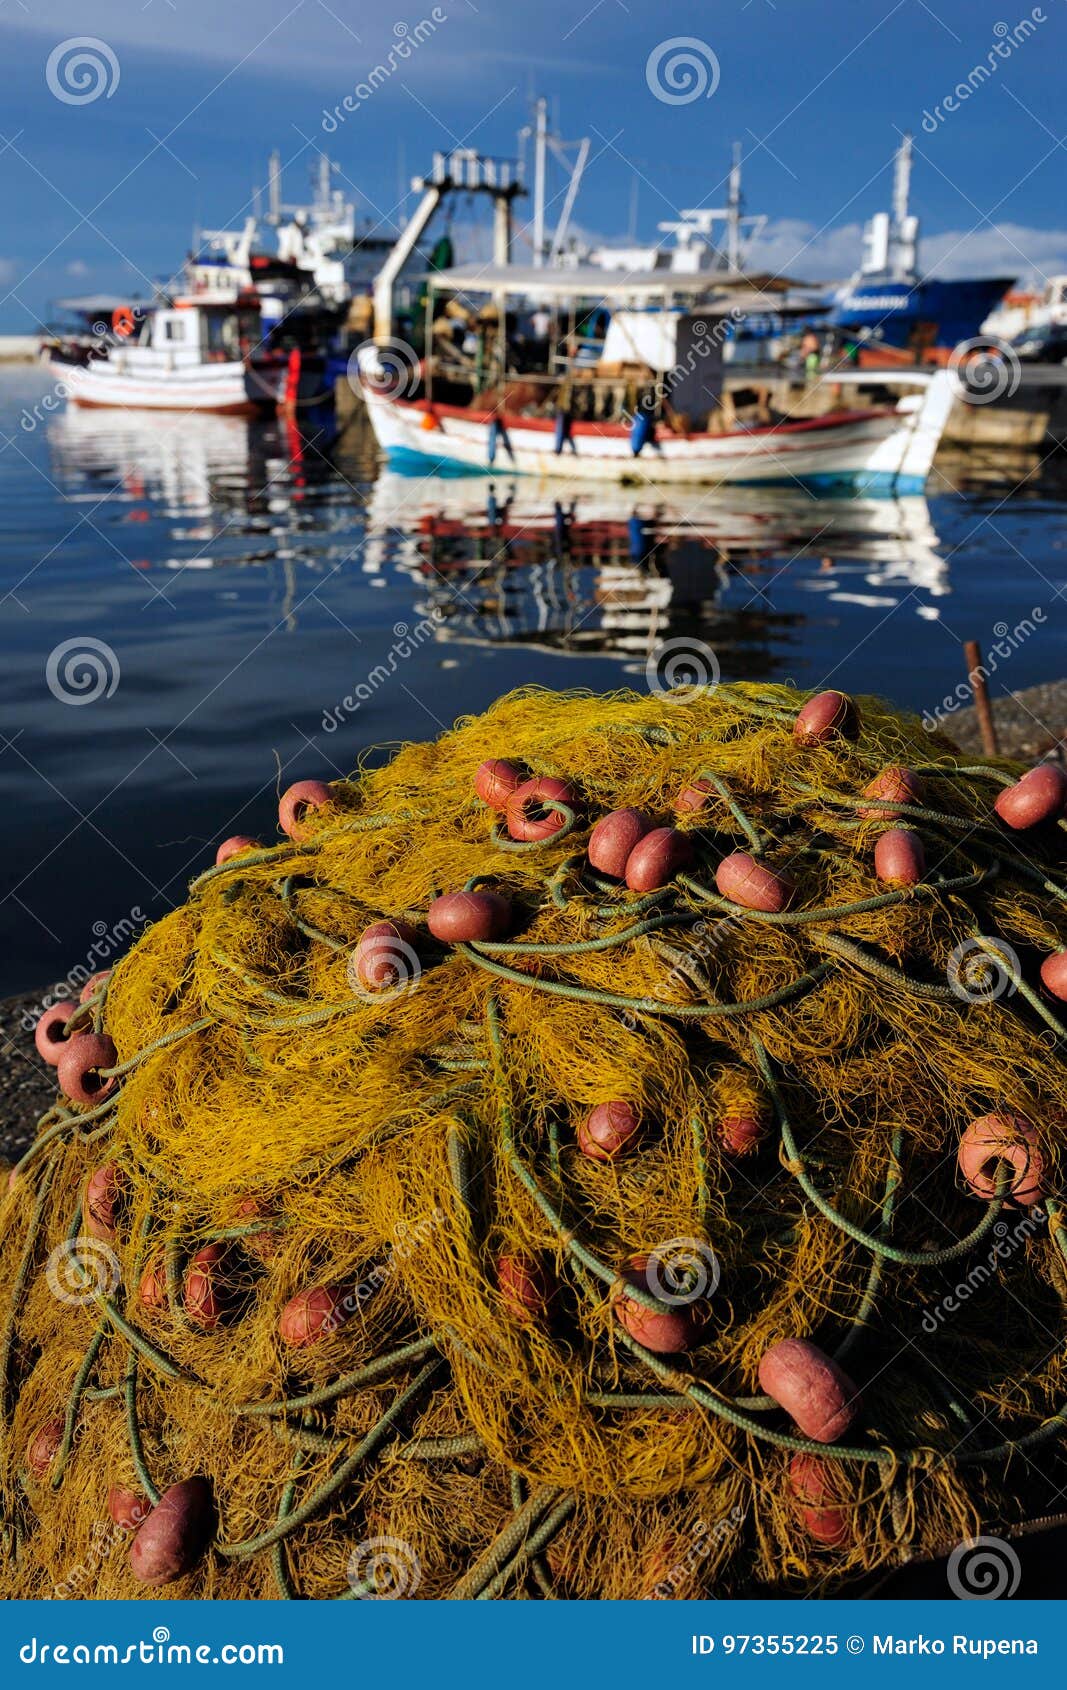 https://thumbs.dreamstime.com/z/trammel-fishing-near-sea-stavros-greece-97355225.jpg